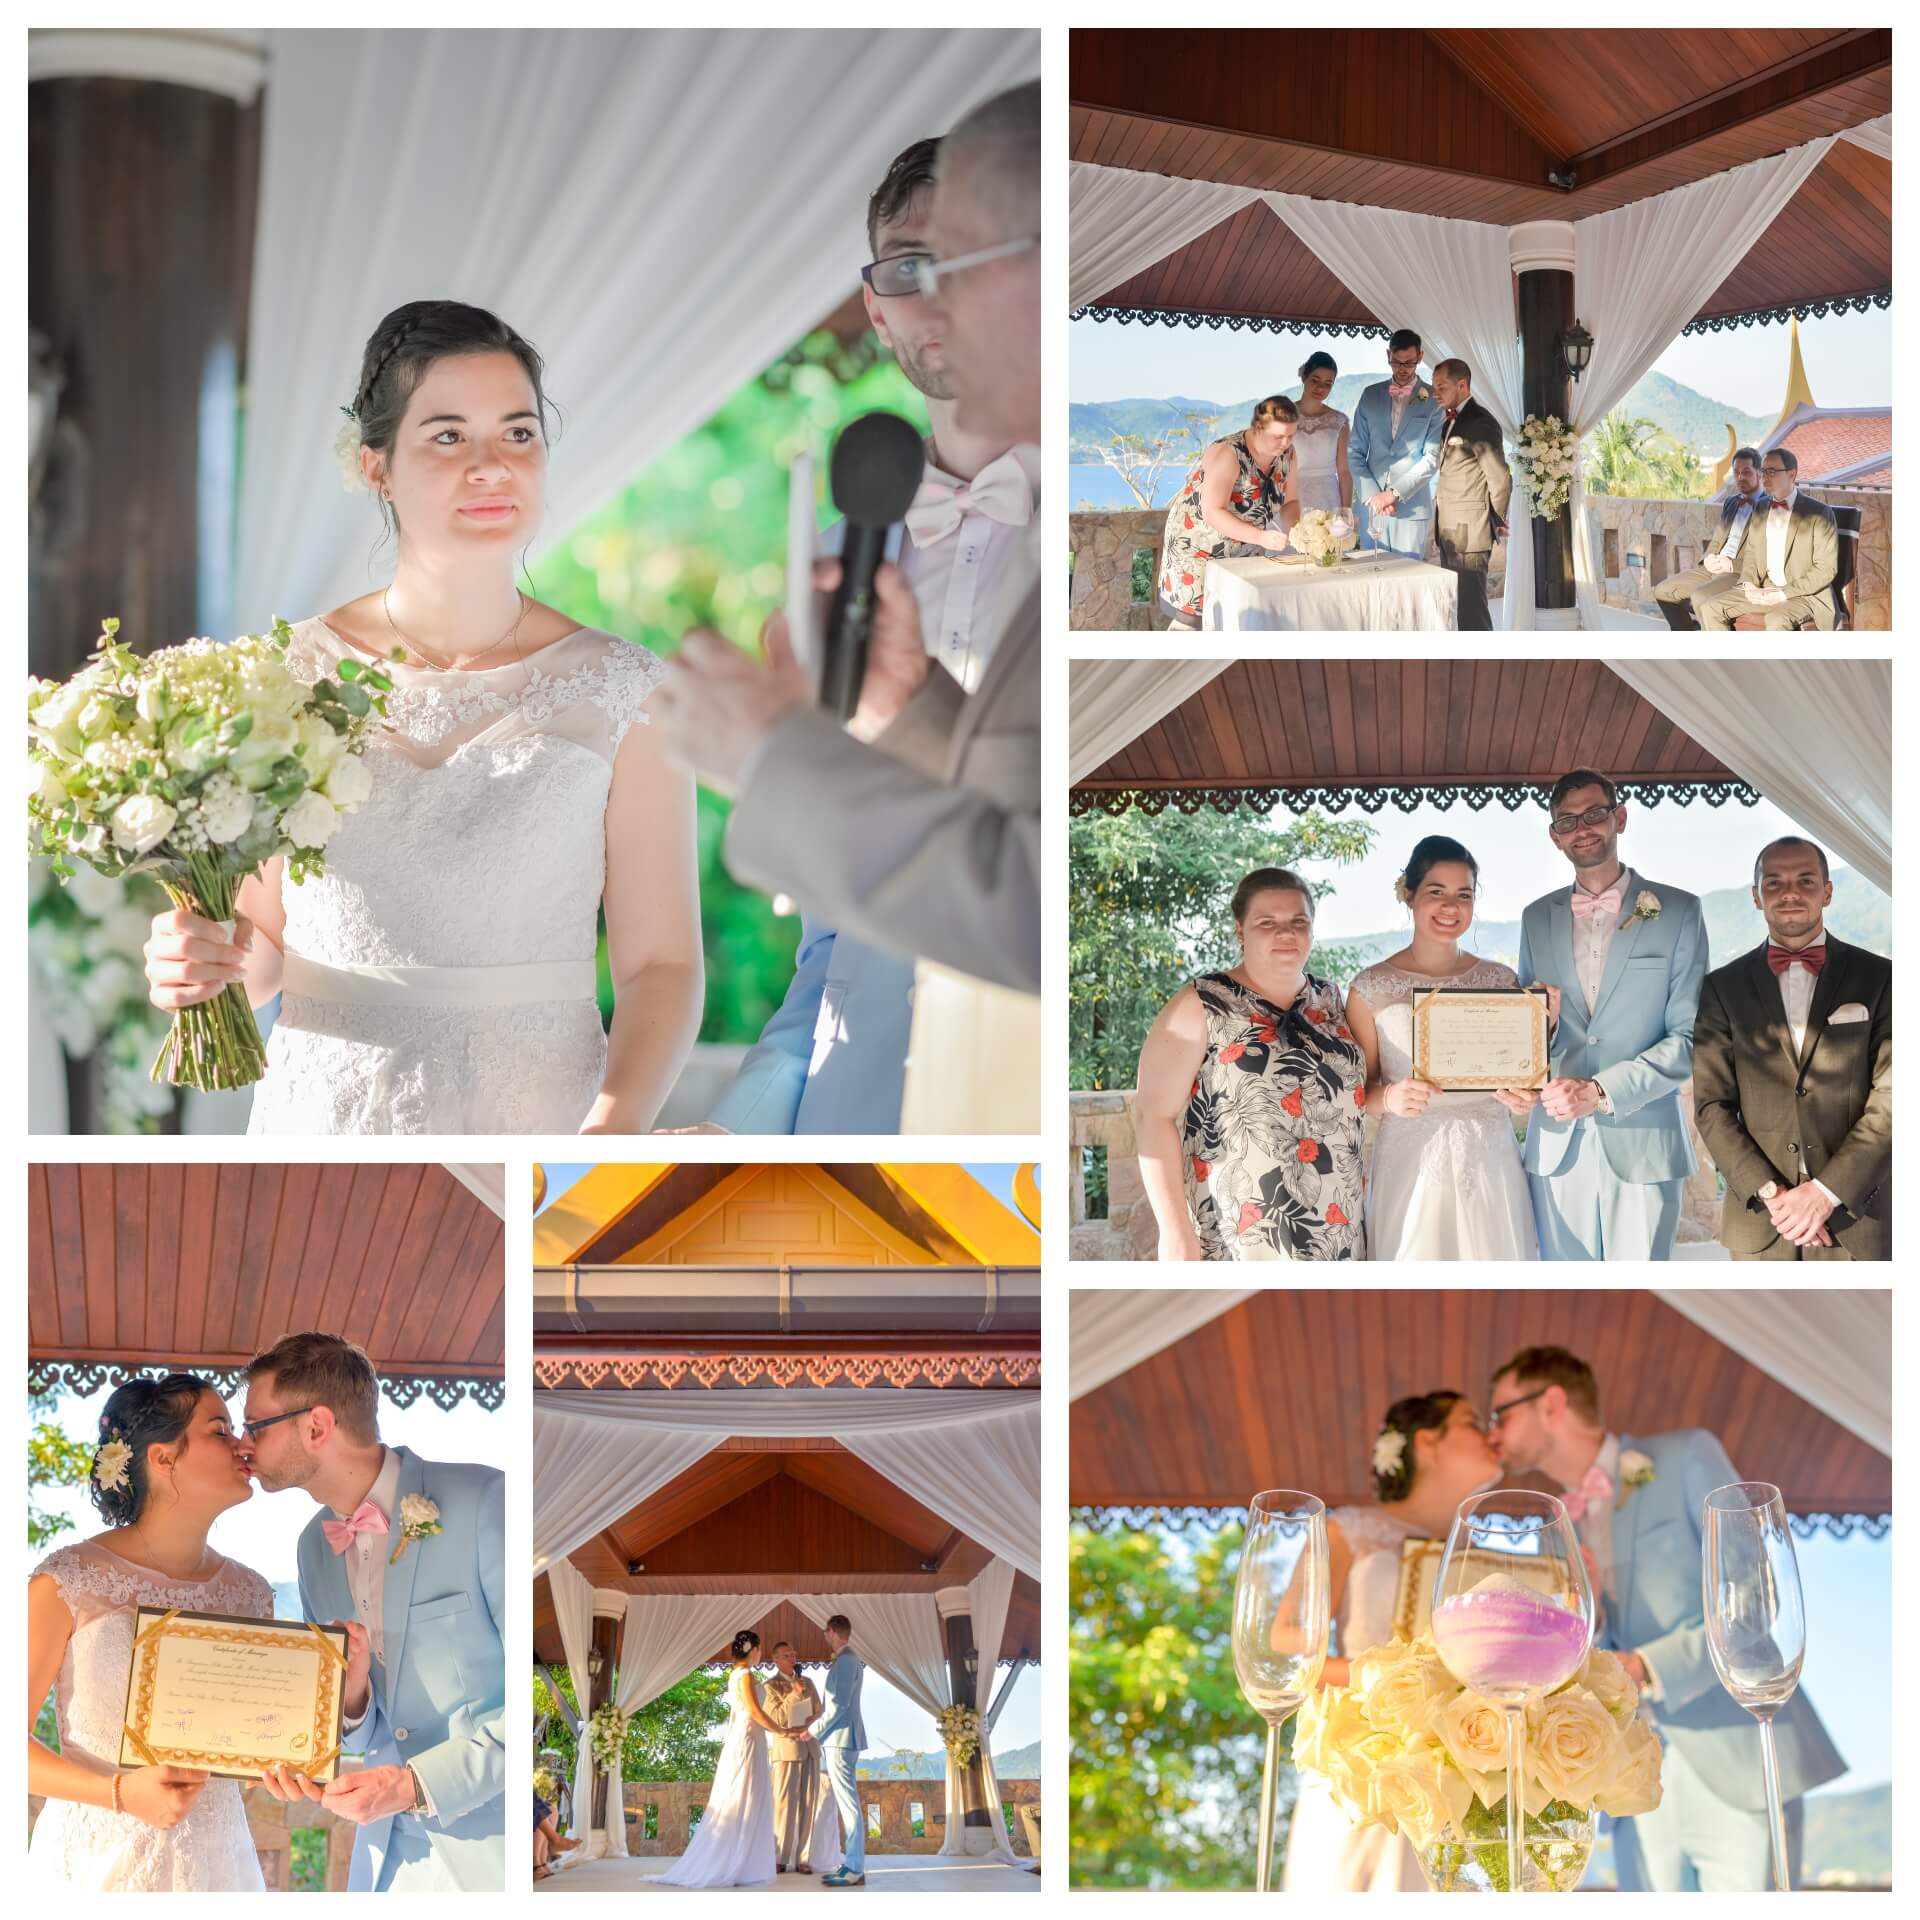 Phuket, Thailand wedding photographer